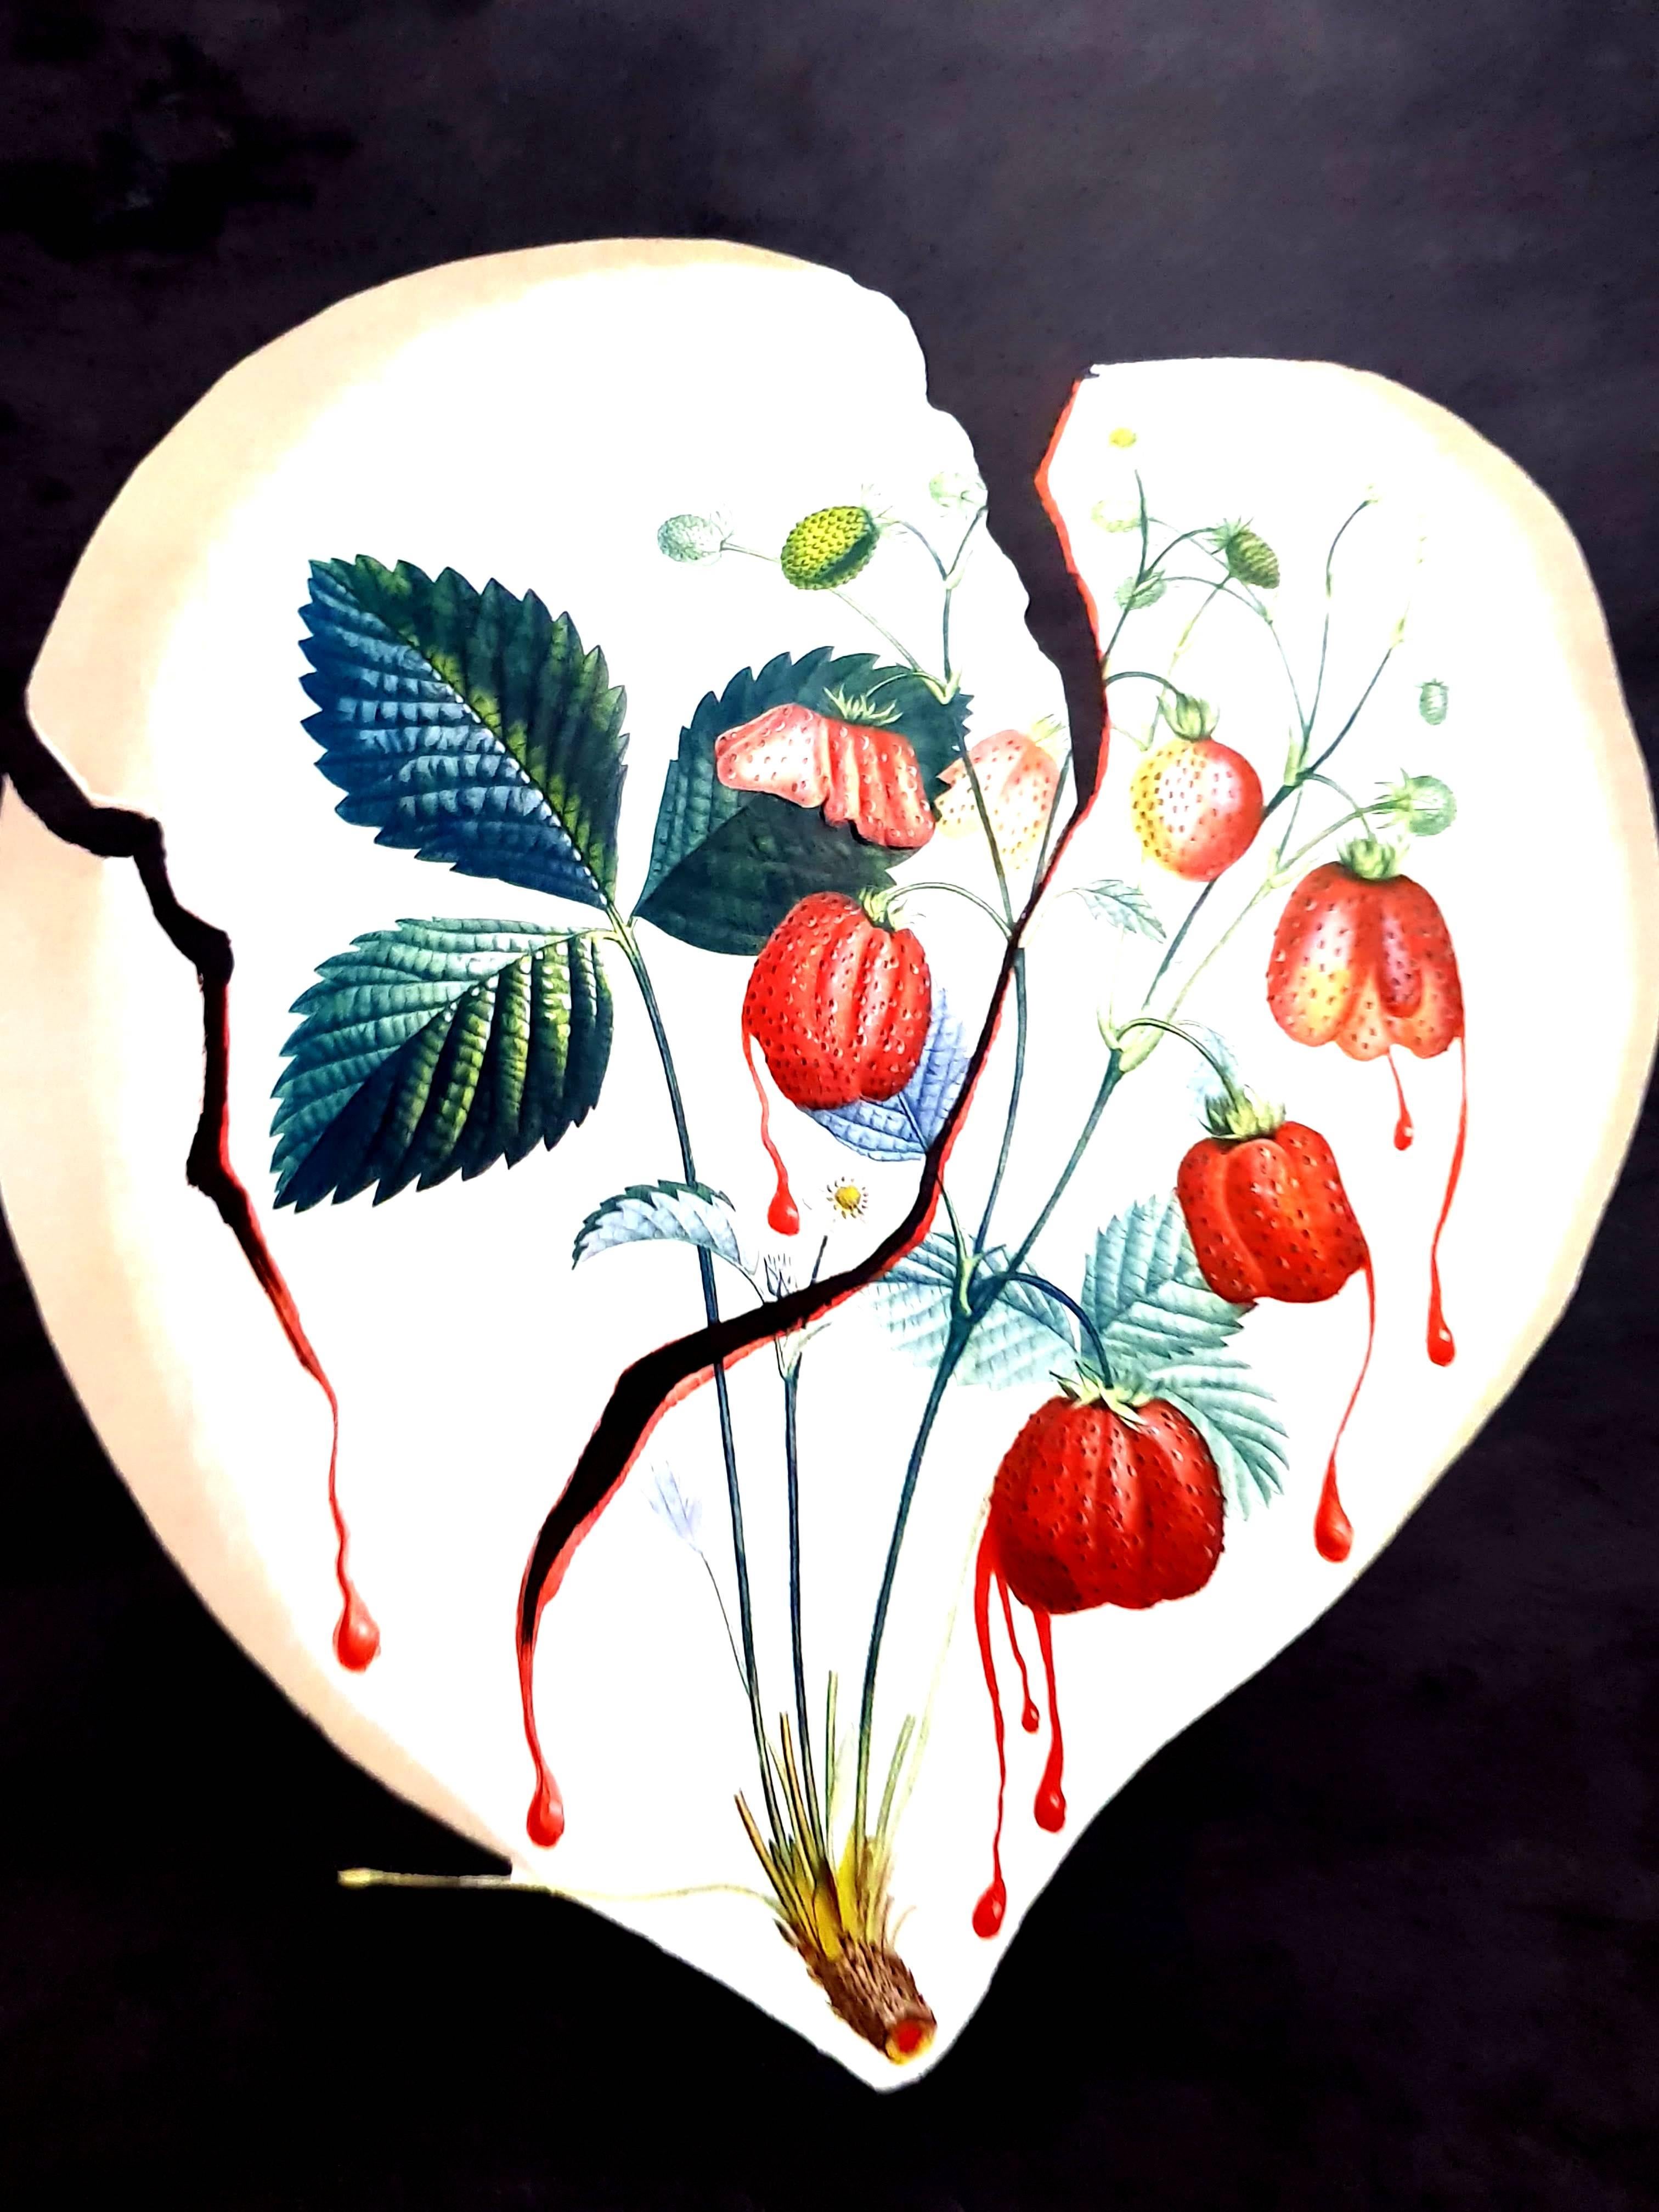 Salvador Dali - Strawberry Heart - Original Hand-Signed Lithograph - Black Still-Life Print by Salvador Dalí